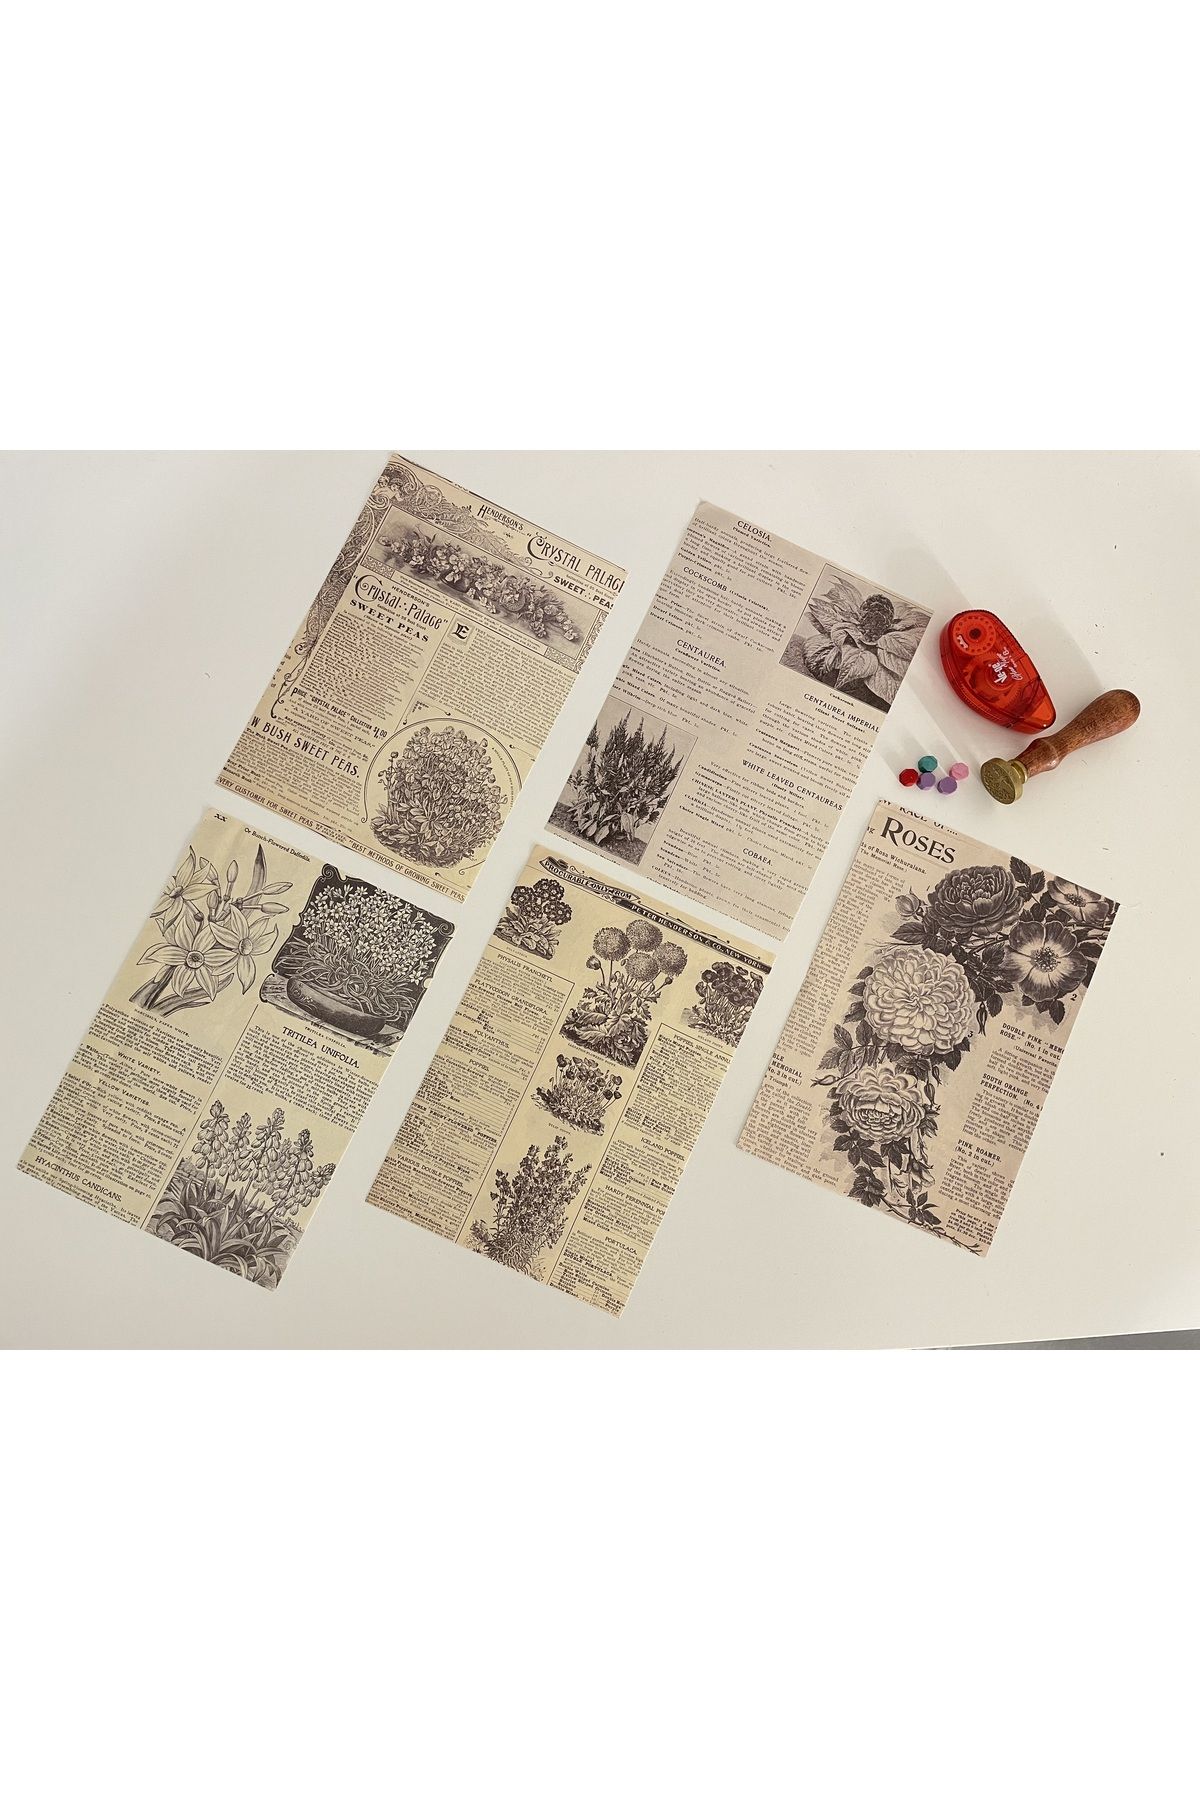 SF SCRAPBOOK KIRTASİYE Vintage, Bitki, Çiçek Kağıt Temalı Journal Set, Scrapbook, Bullet, Galeri Duvarı, Sanatsal Baskı/3